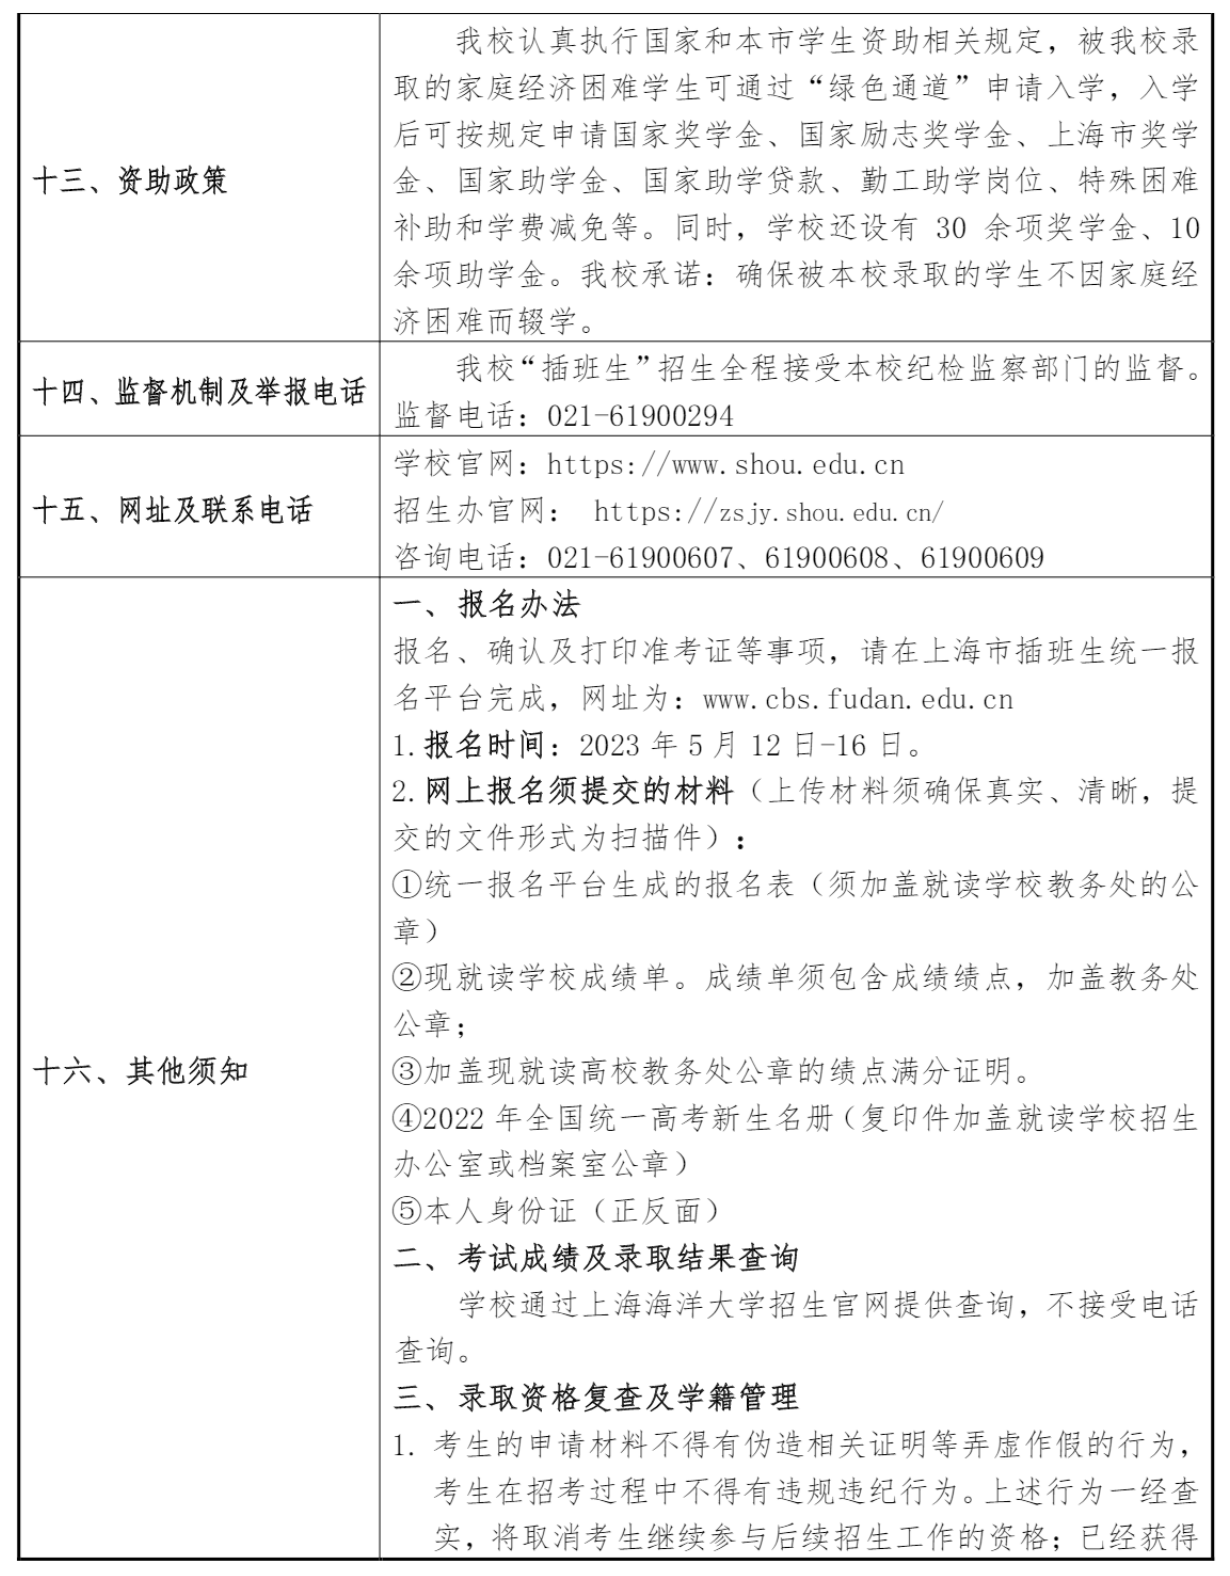 上海海洋大学2023年插班生招生章程